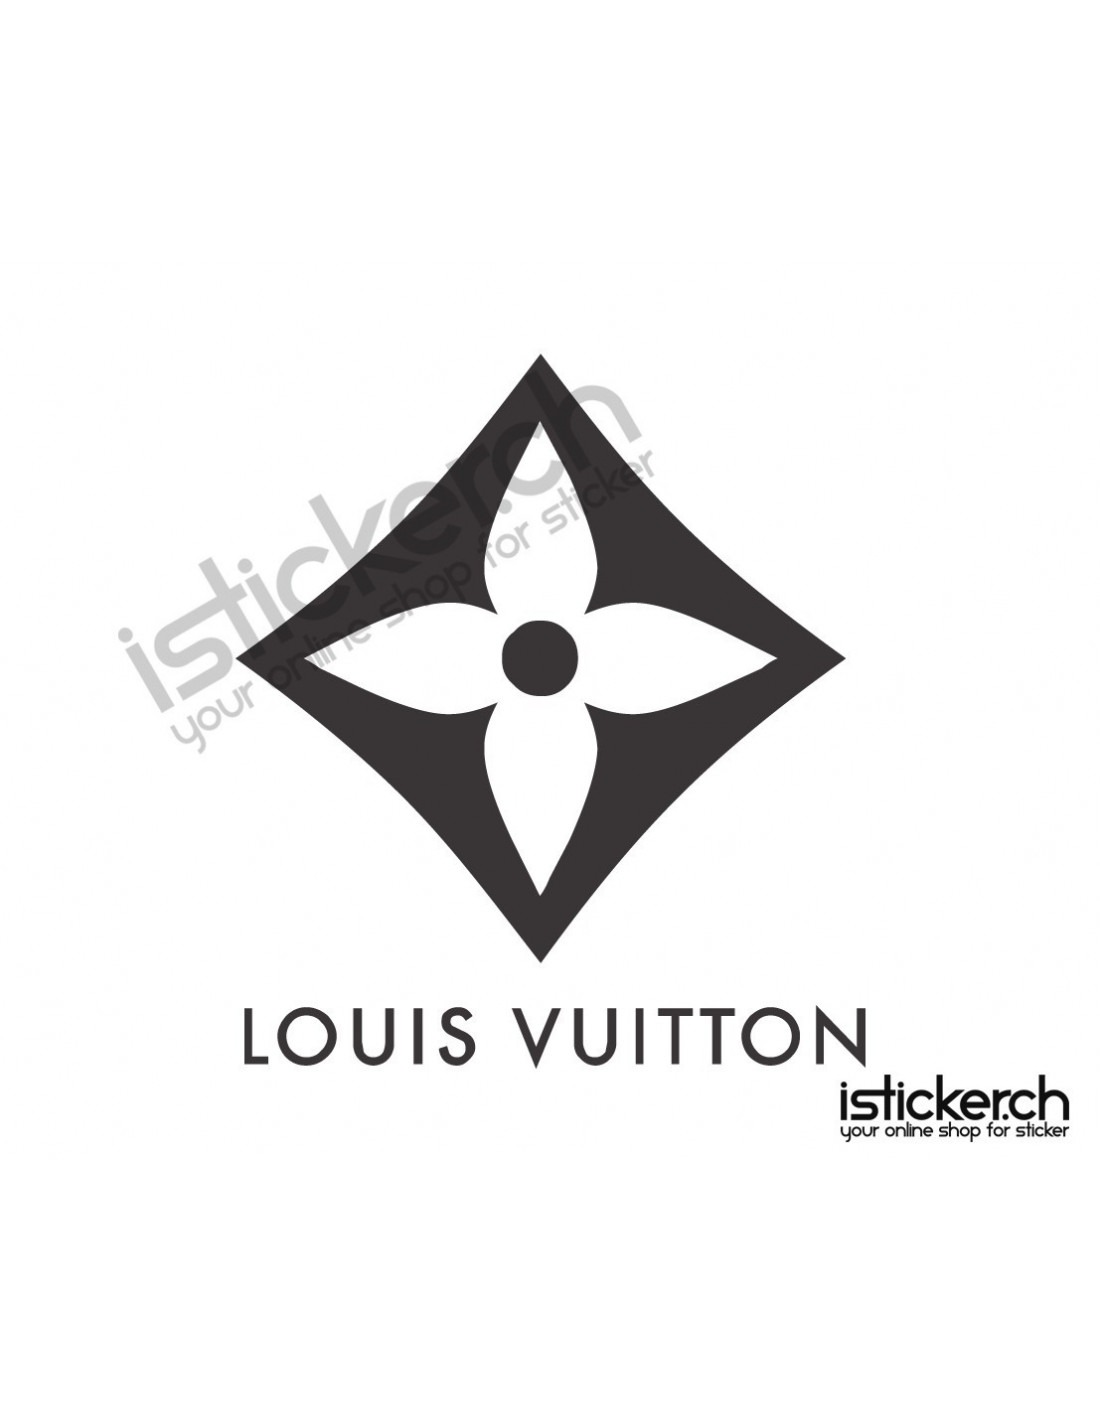 Louis Vuitton Logo D3 Decal Sticker » A1 Decals